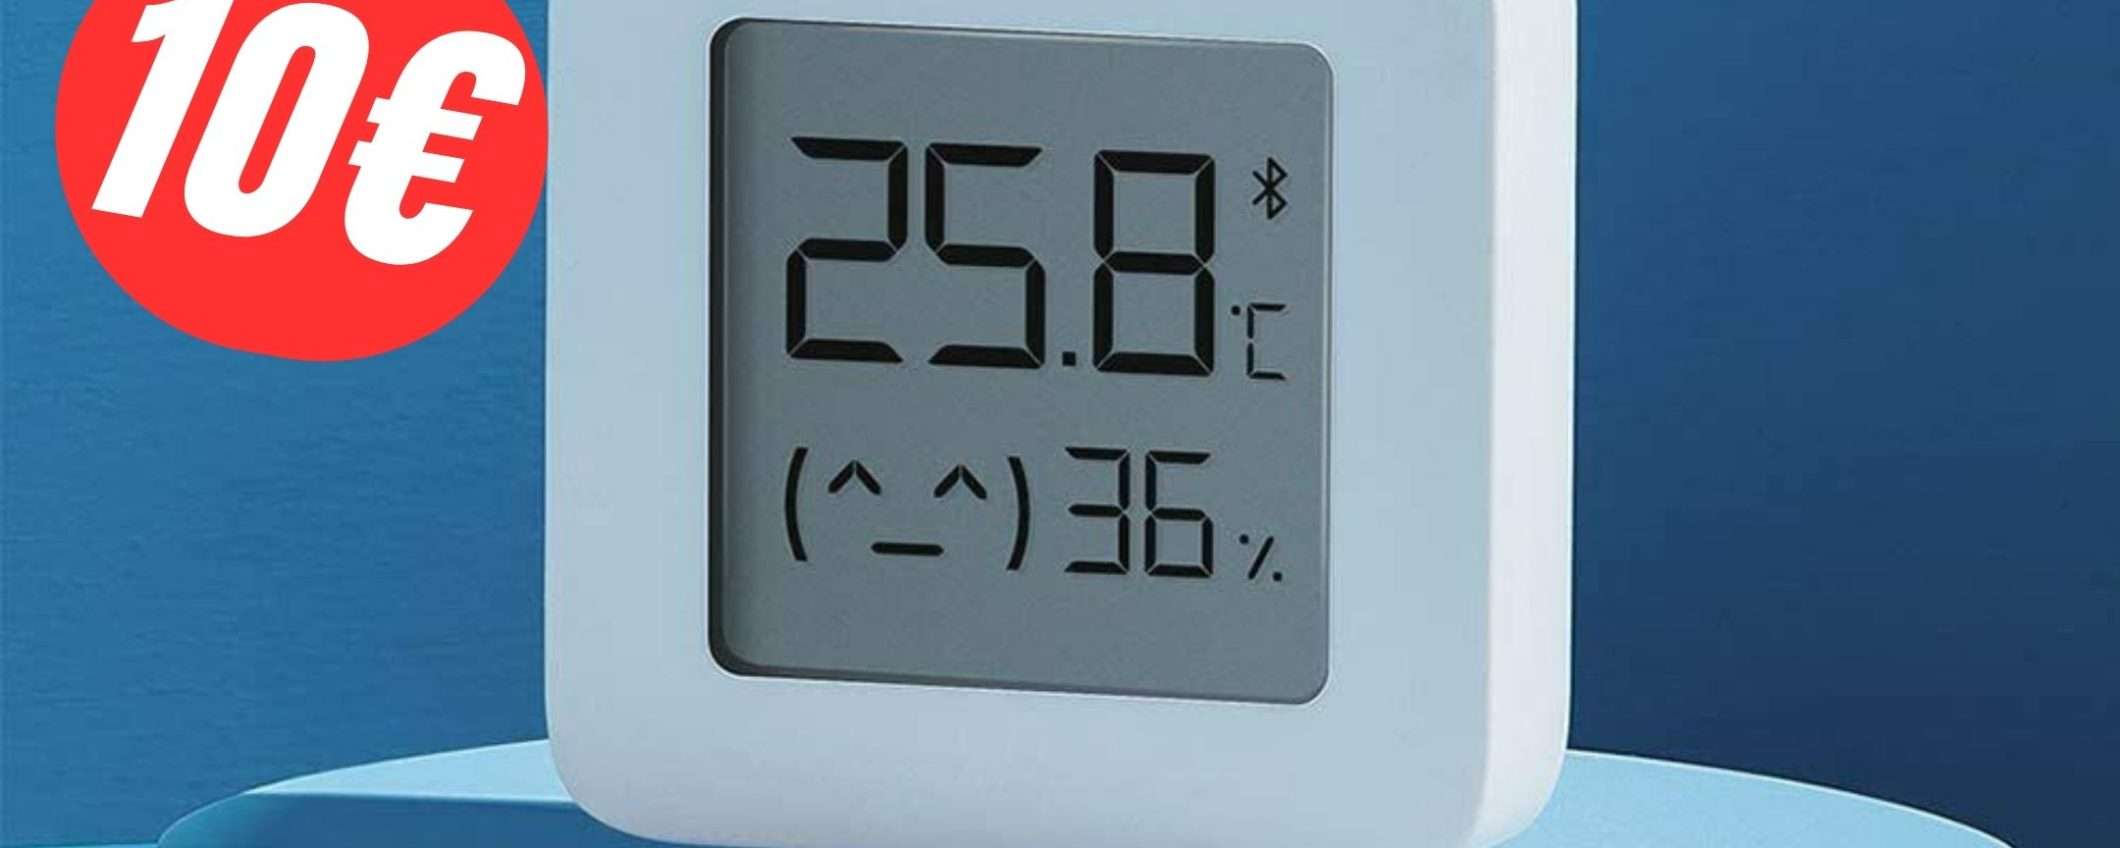 Questo sensore Xiaomi analizza la Temperatura e il livello di Umidità!